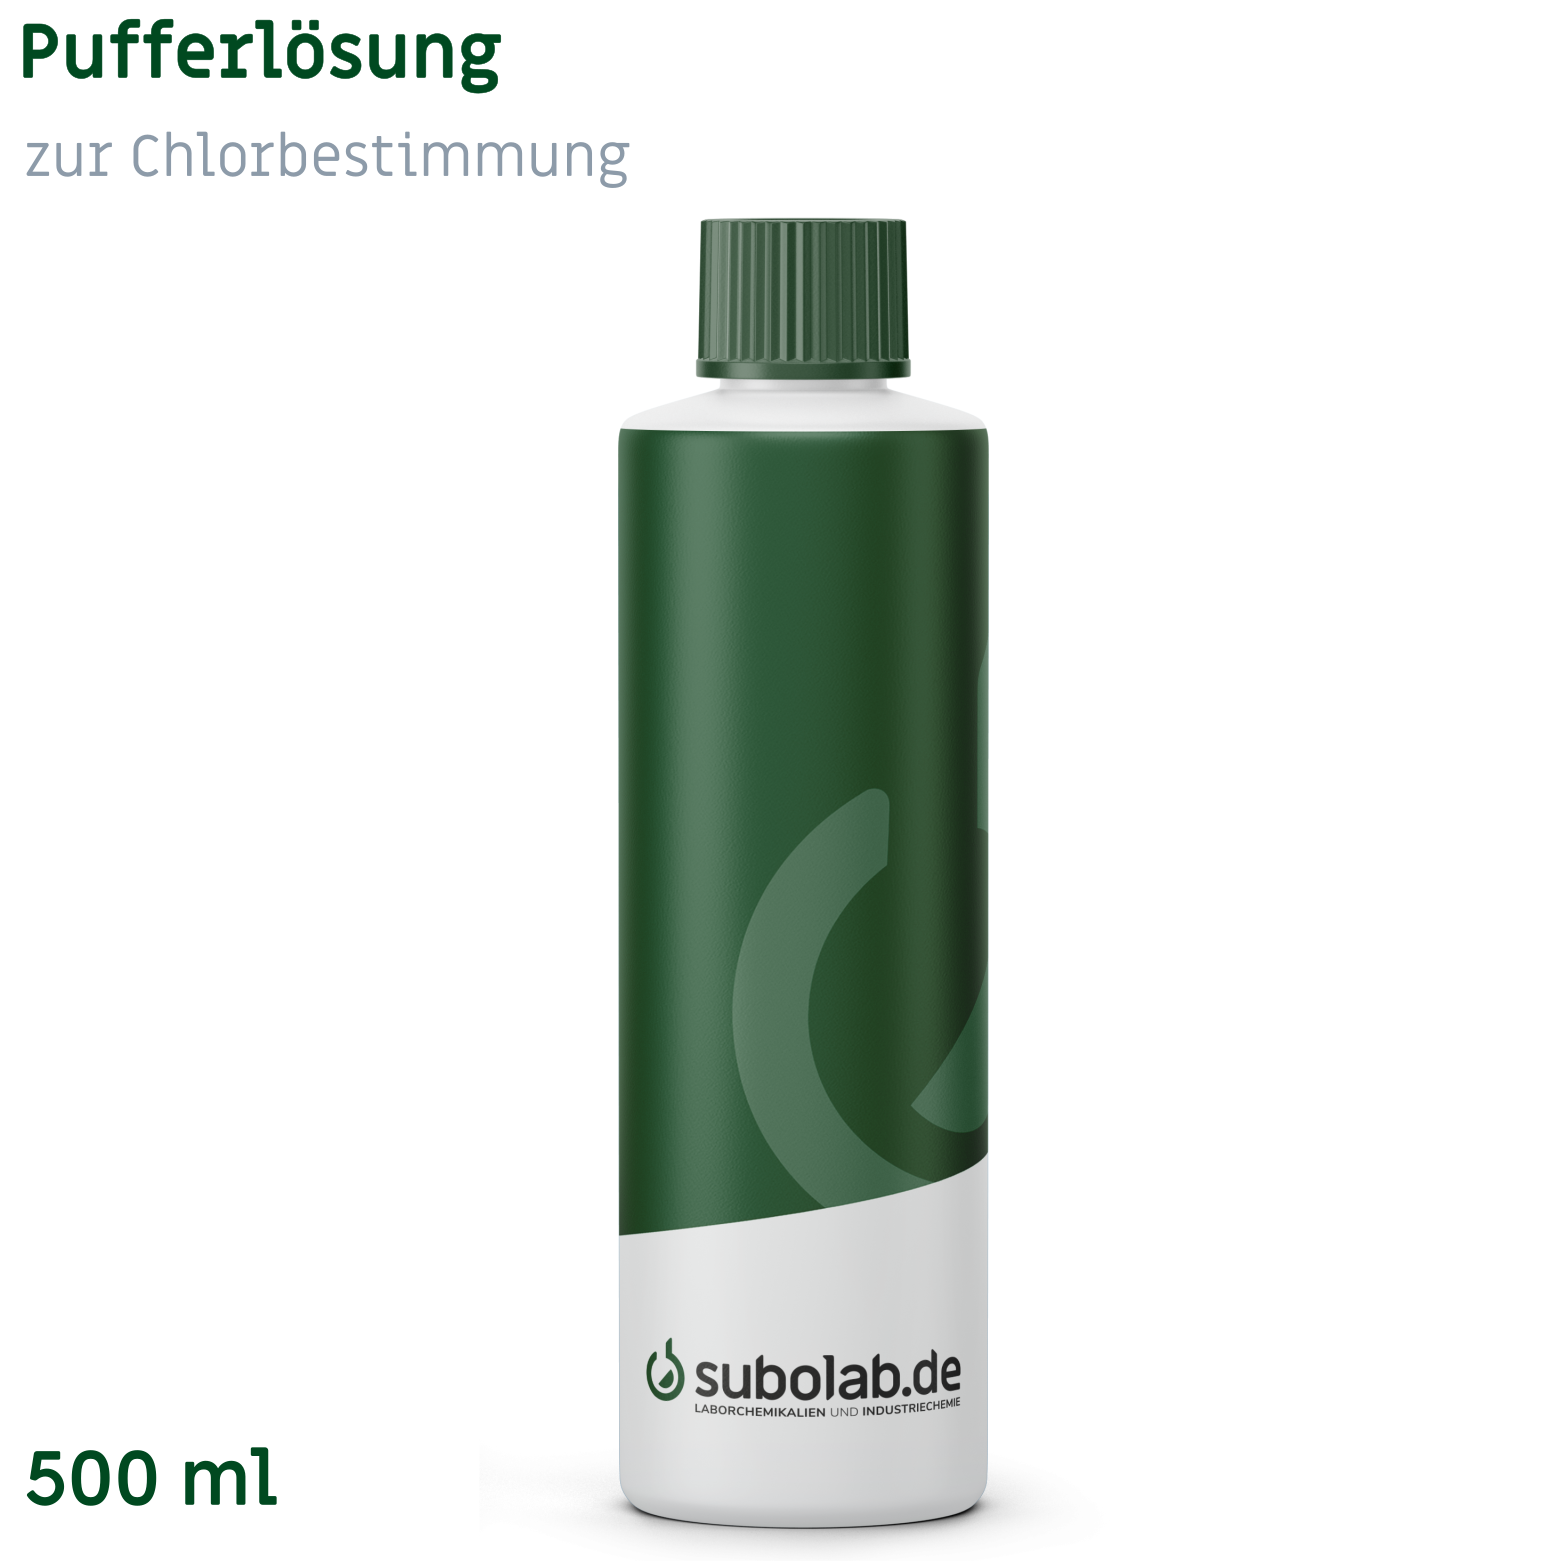 Bild von Pufferlösung zur Chlorbestimmung (500 ml)